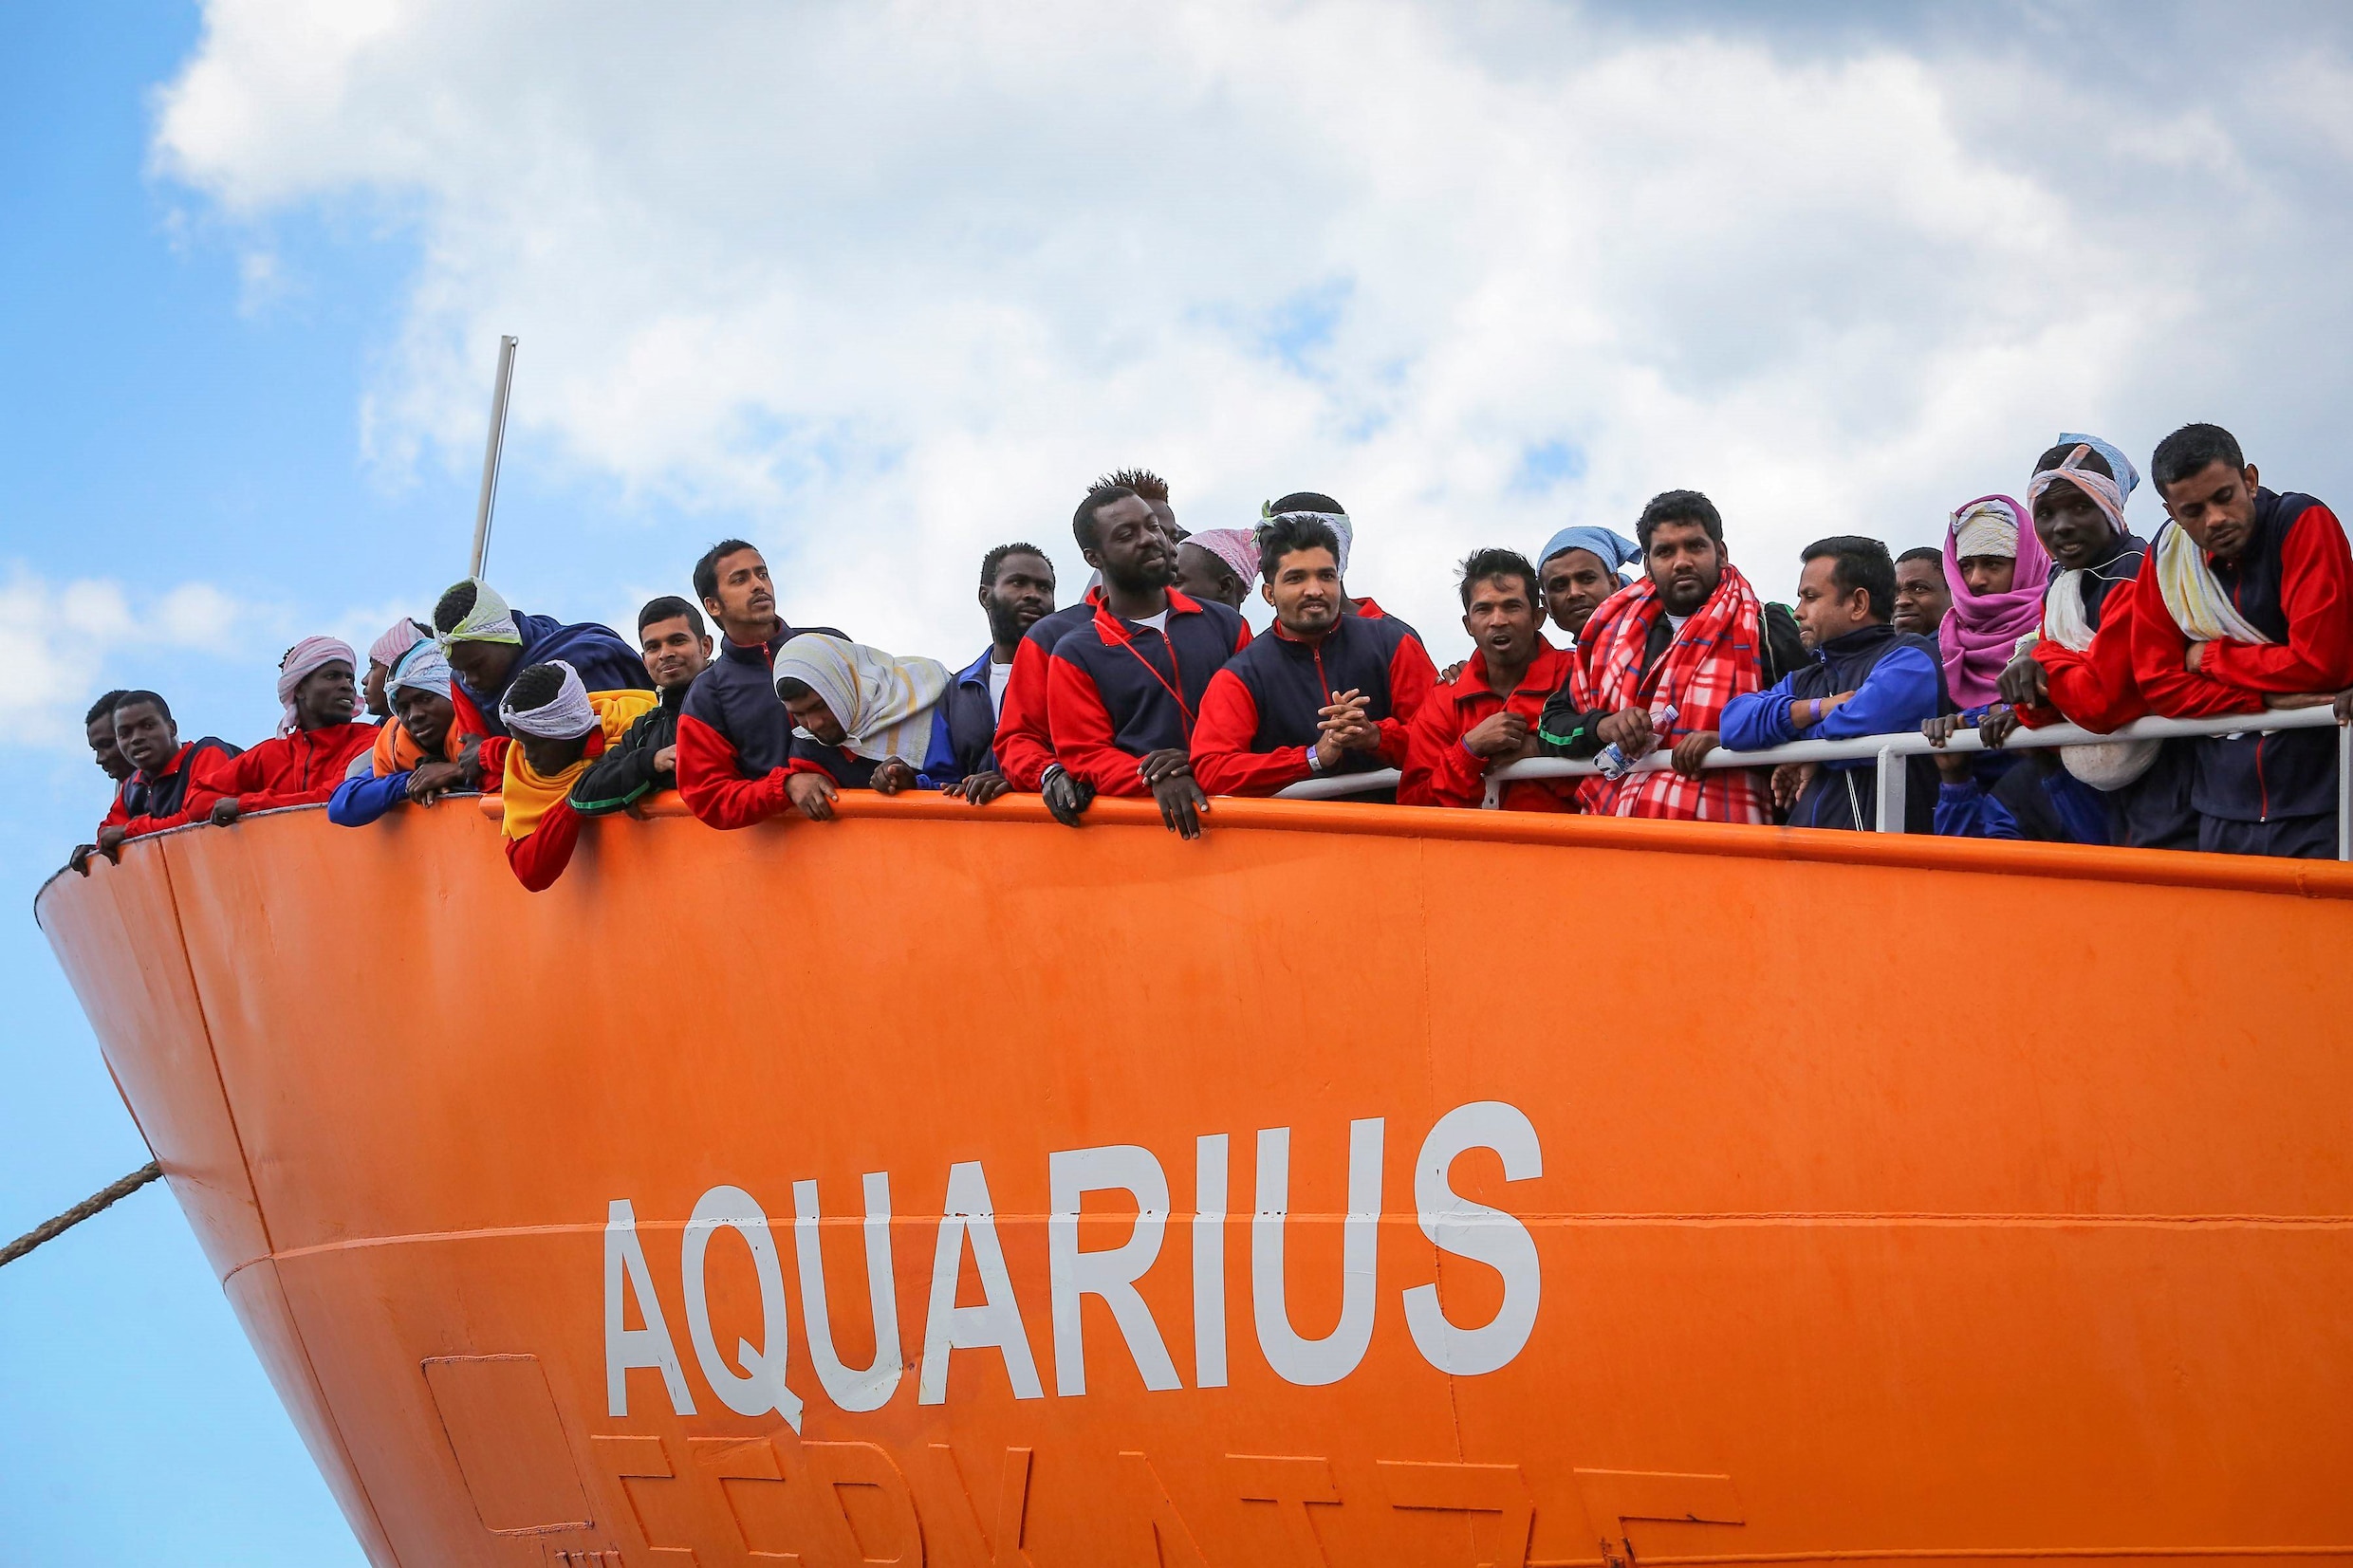 Aquarius vestigt hoop op Marseille nu het niet meer onder Panamese vlag mag varen - Frankrijk zegt "Europese oplossing" te zoeken